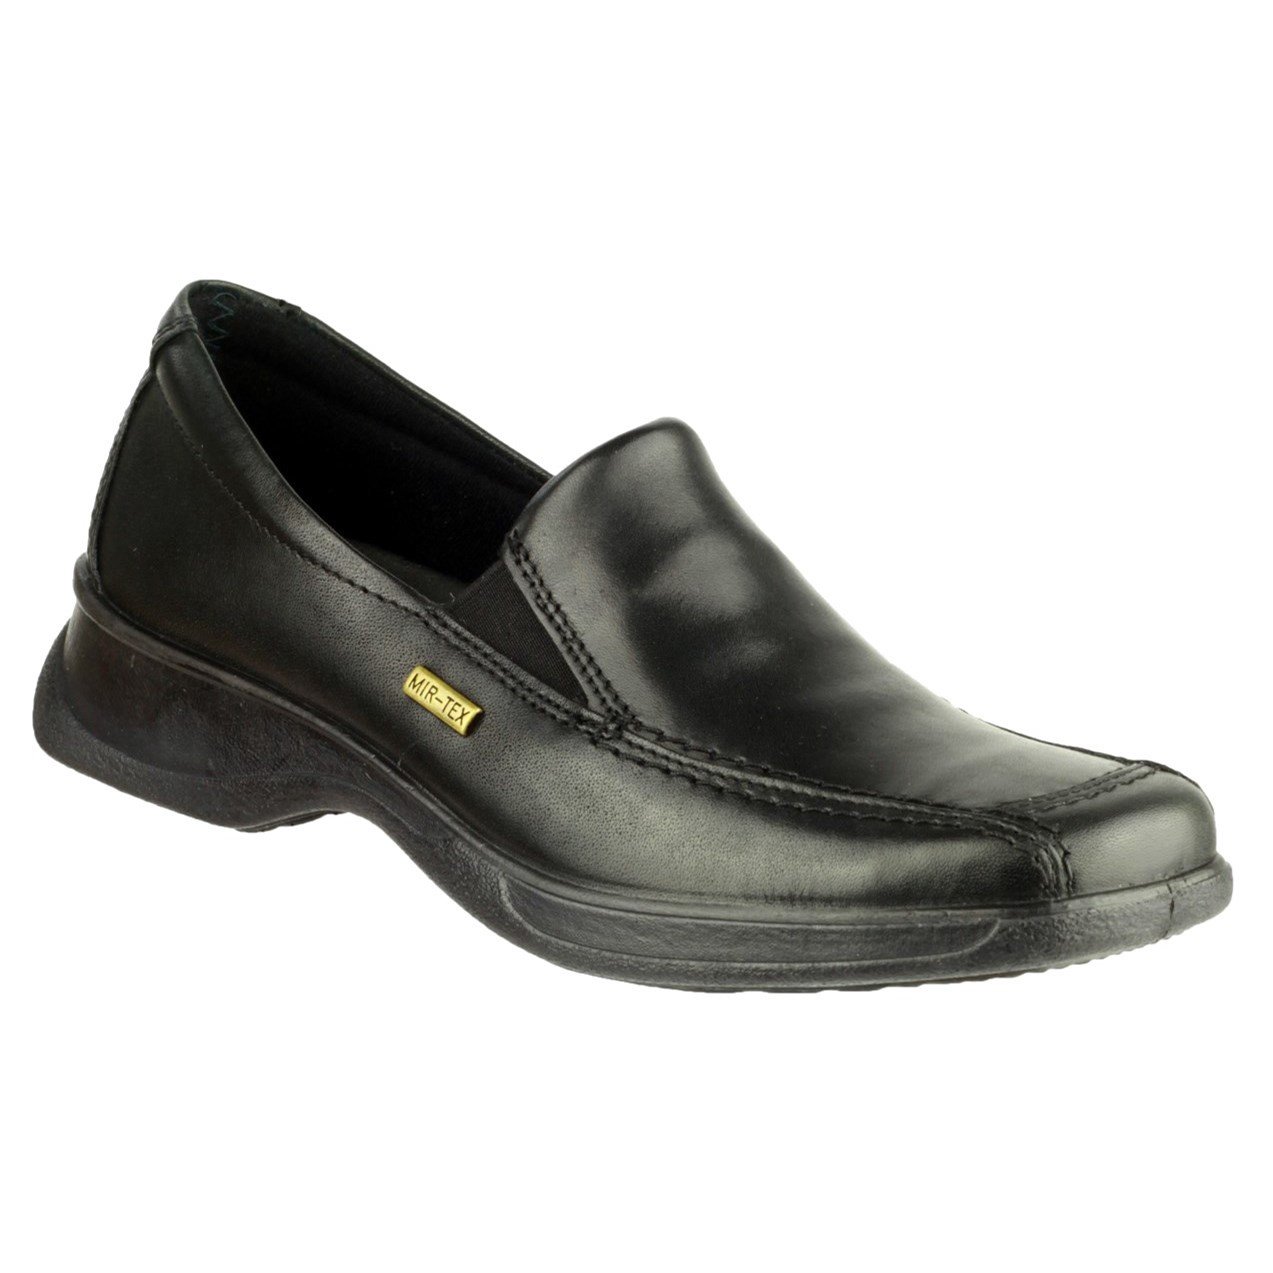 Cotswold Women's Hazelton 2 Waterproof Shoe Black 32983 - Black 8